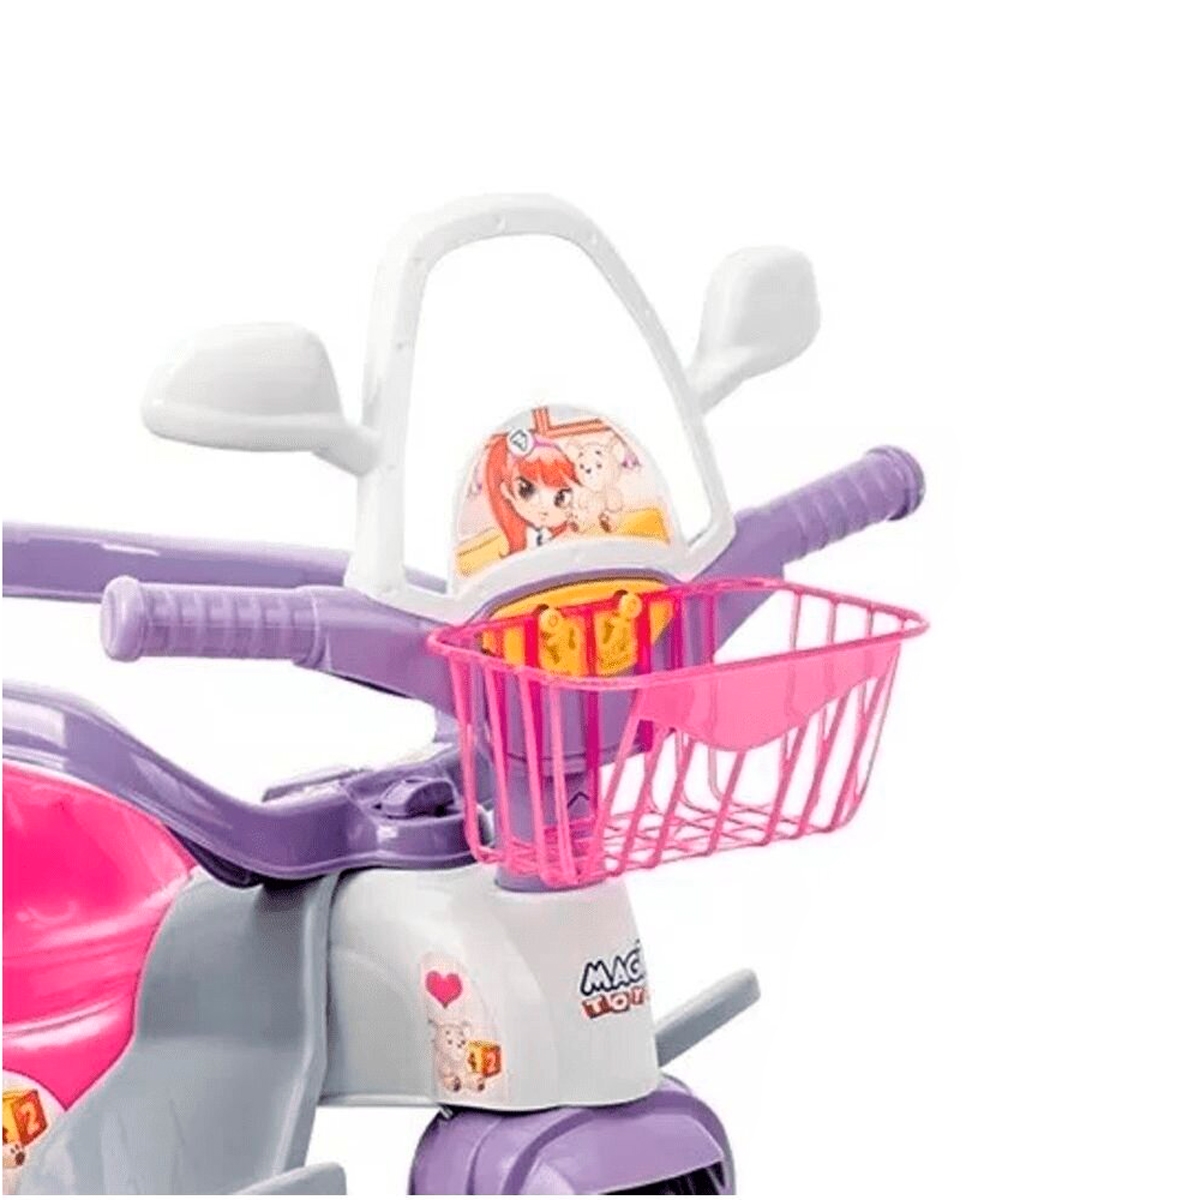 Motoca Triciclo Tico-Tico Com Proteção e Cabo Meg - Magic Toys